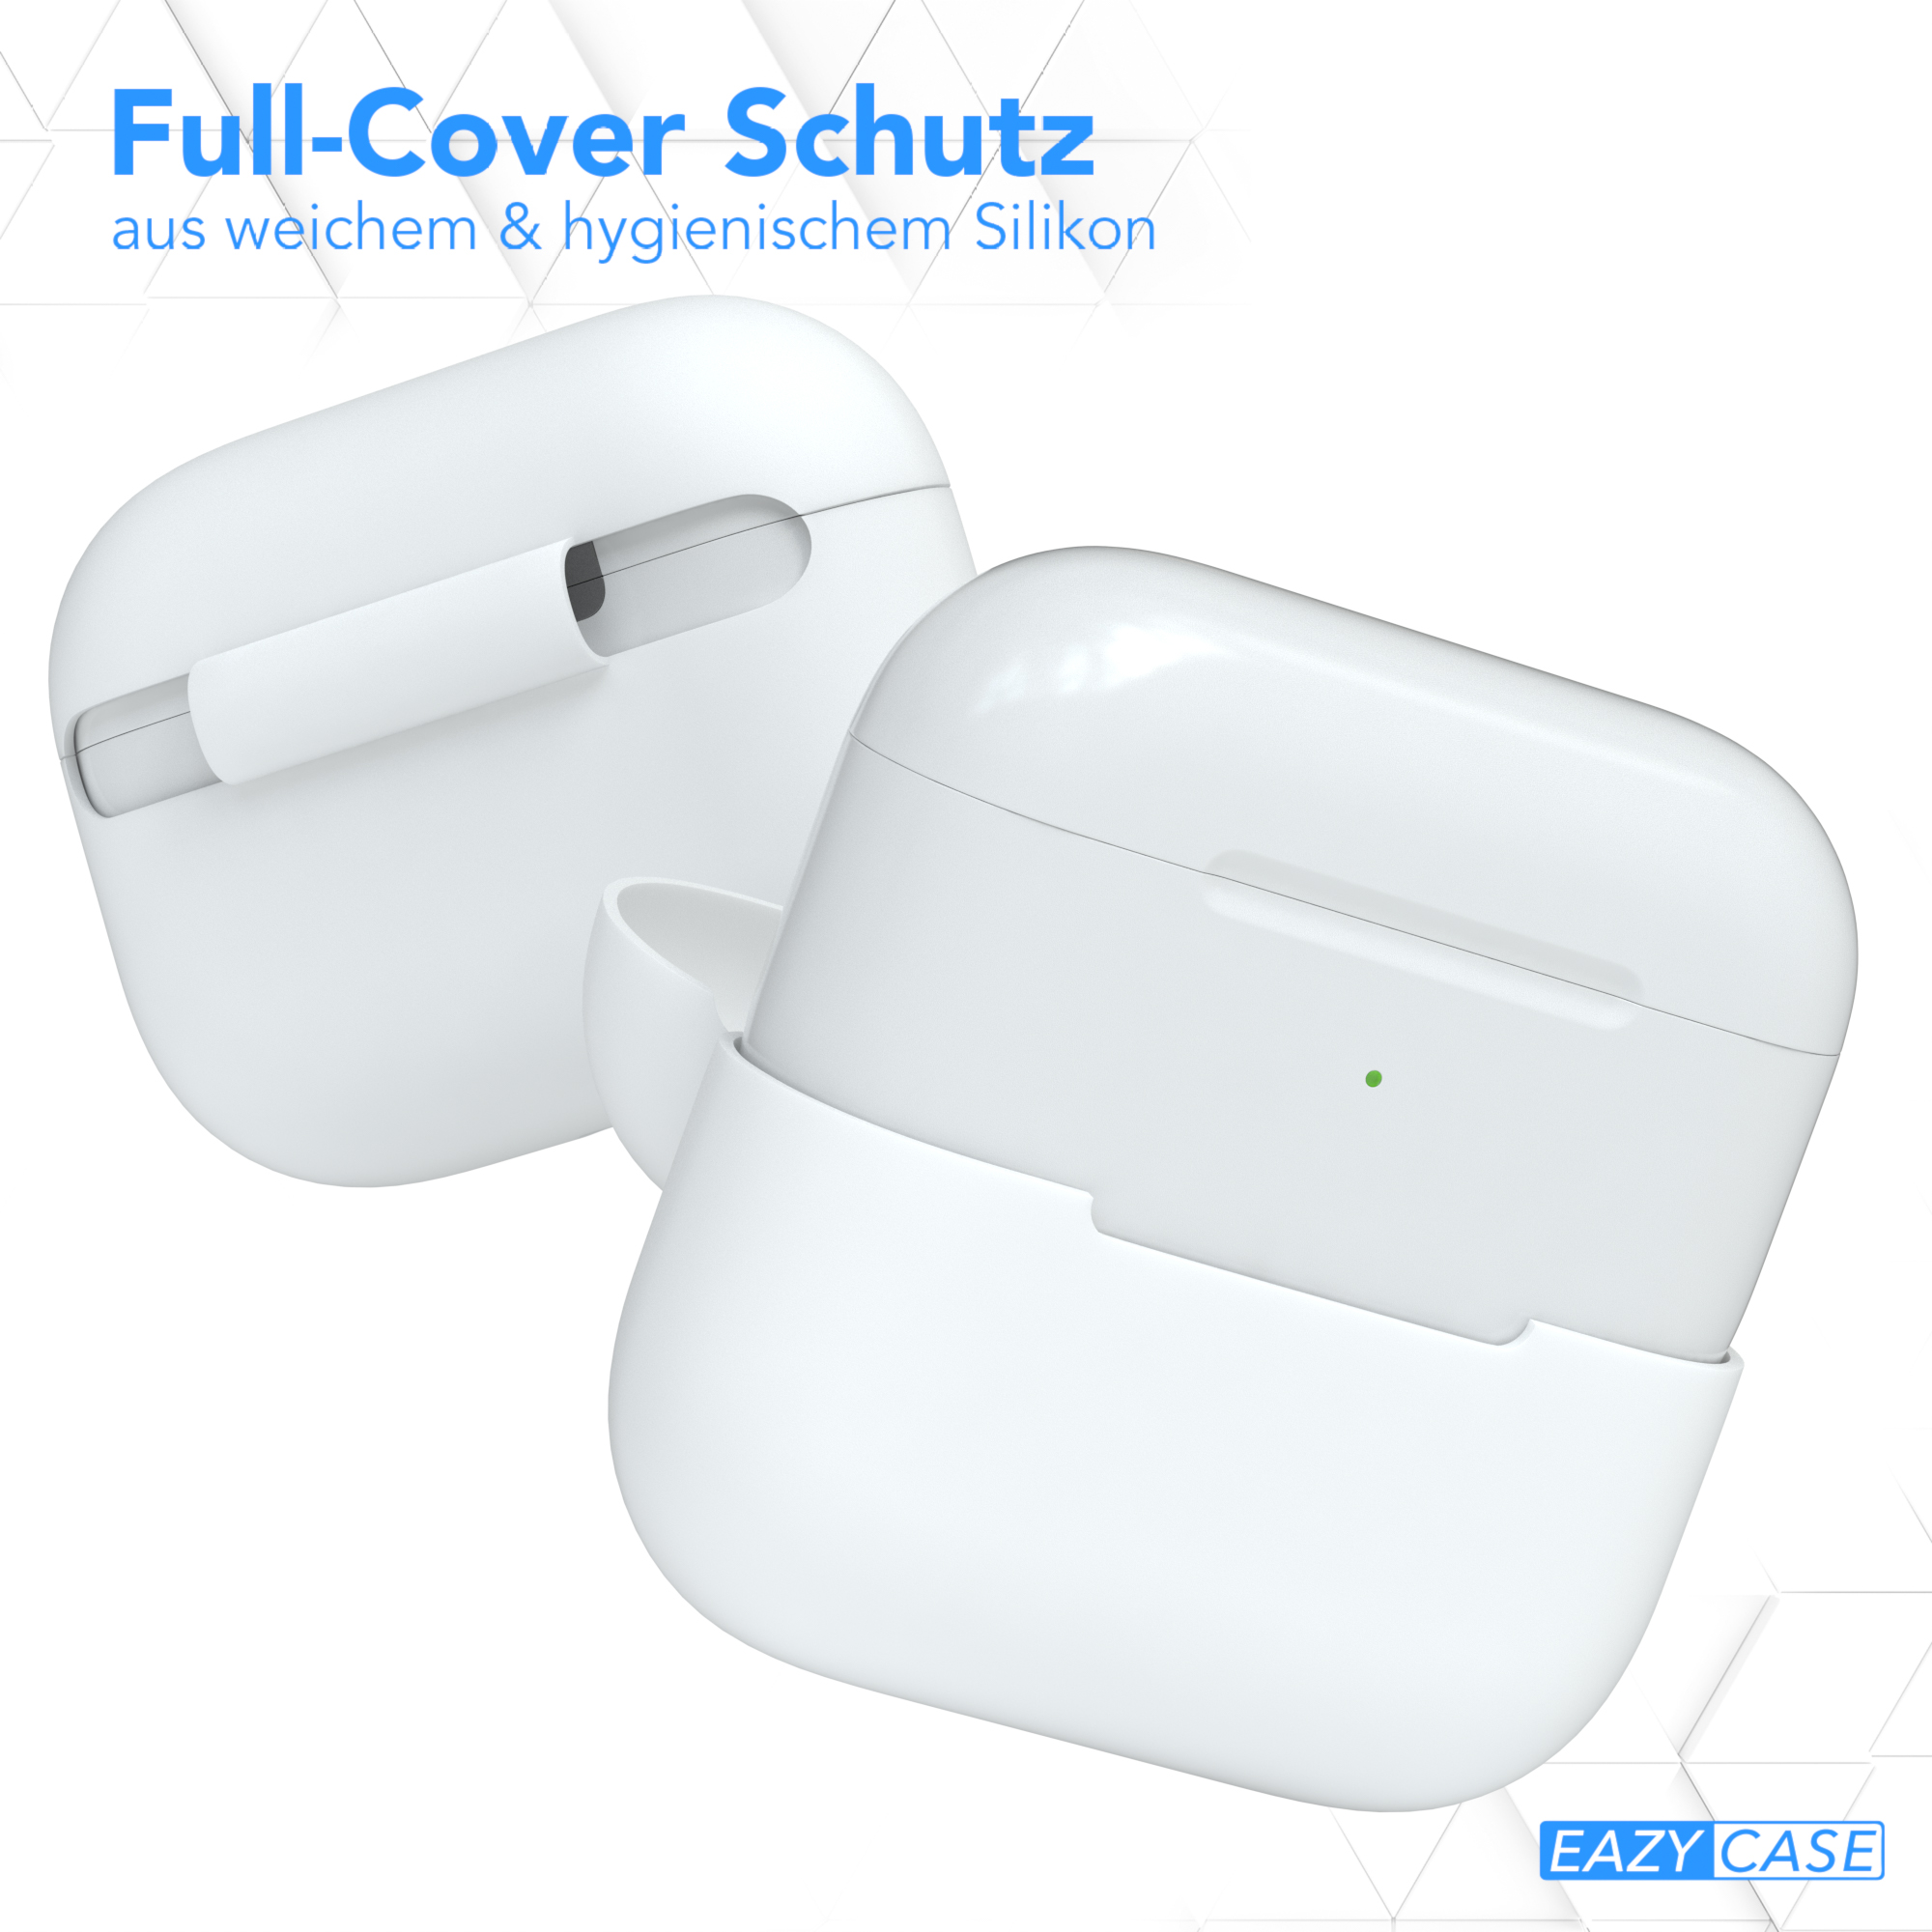 CASE passend EAZY AirPods Case Weiß für: Sleeve Schutzhülle Apple Pro Silikon